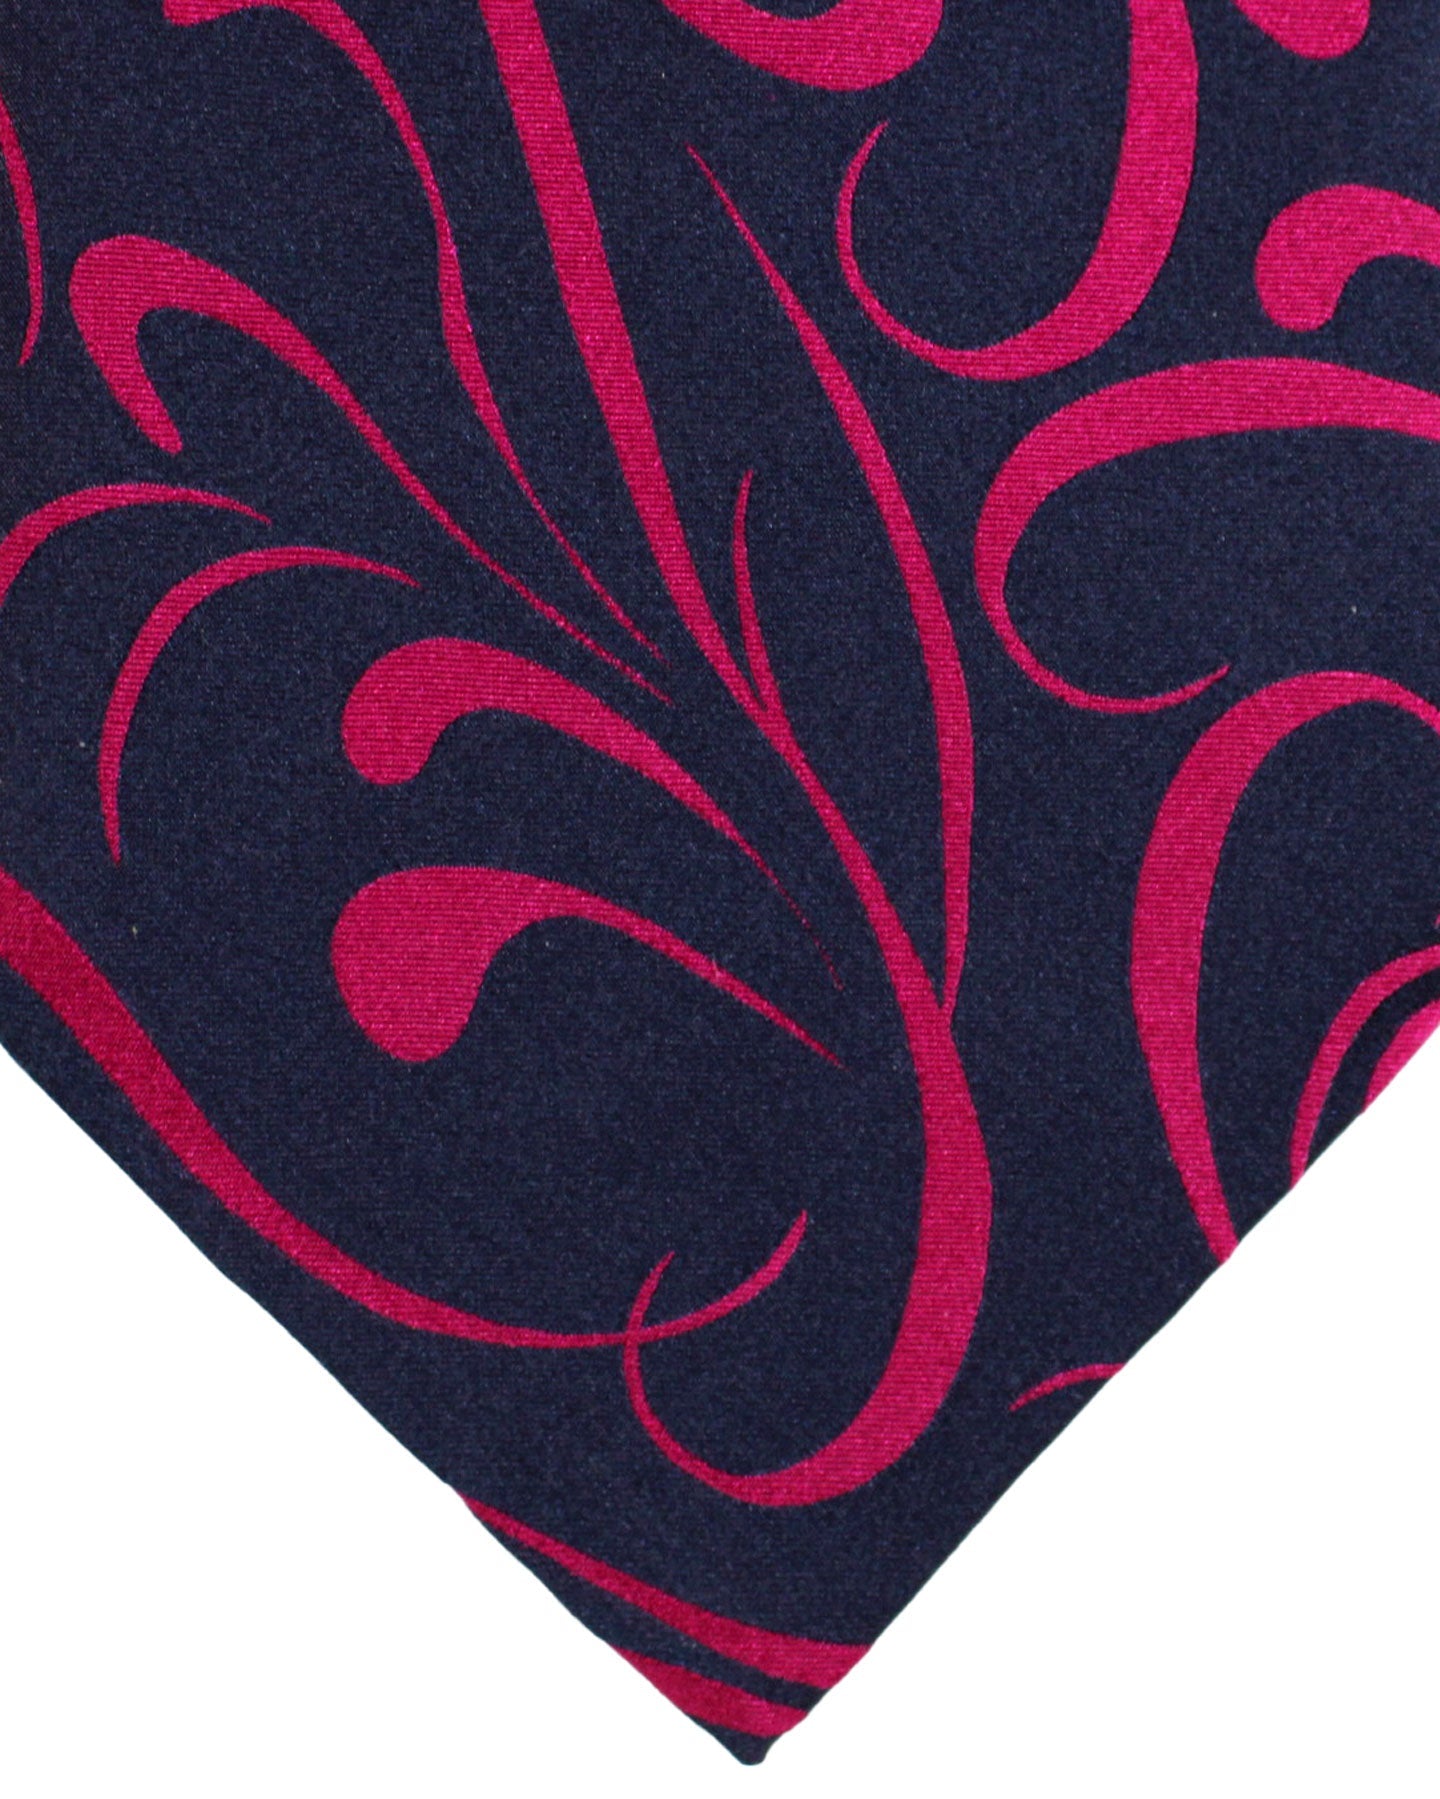 Zilli Silk Tie Purple Hot Pink Swirl - Wide Necktie